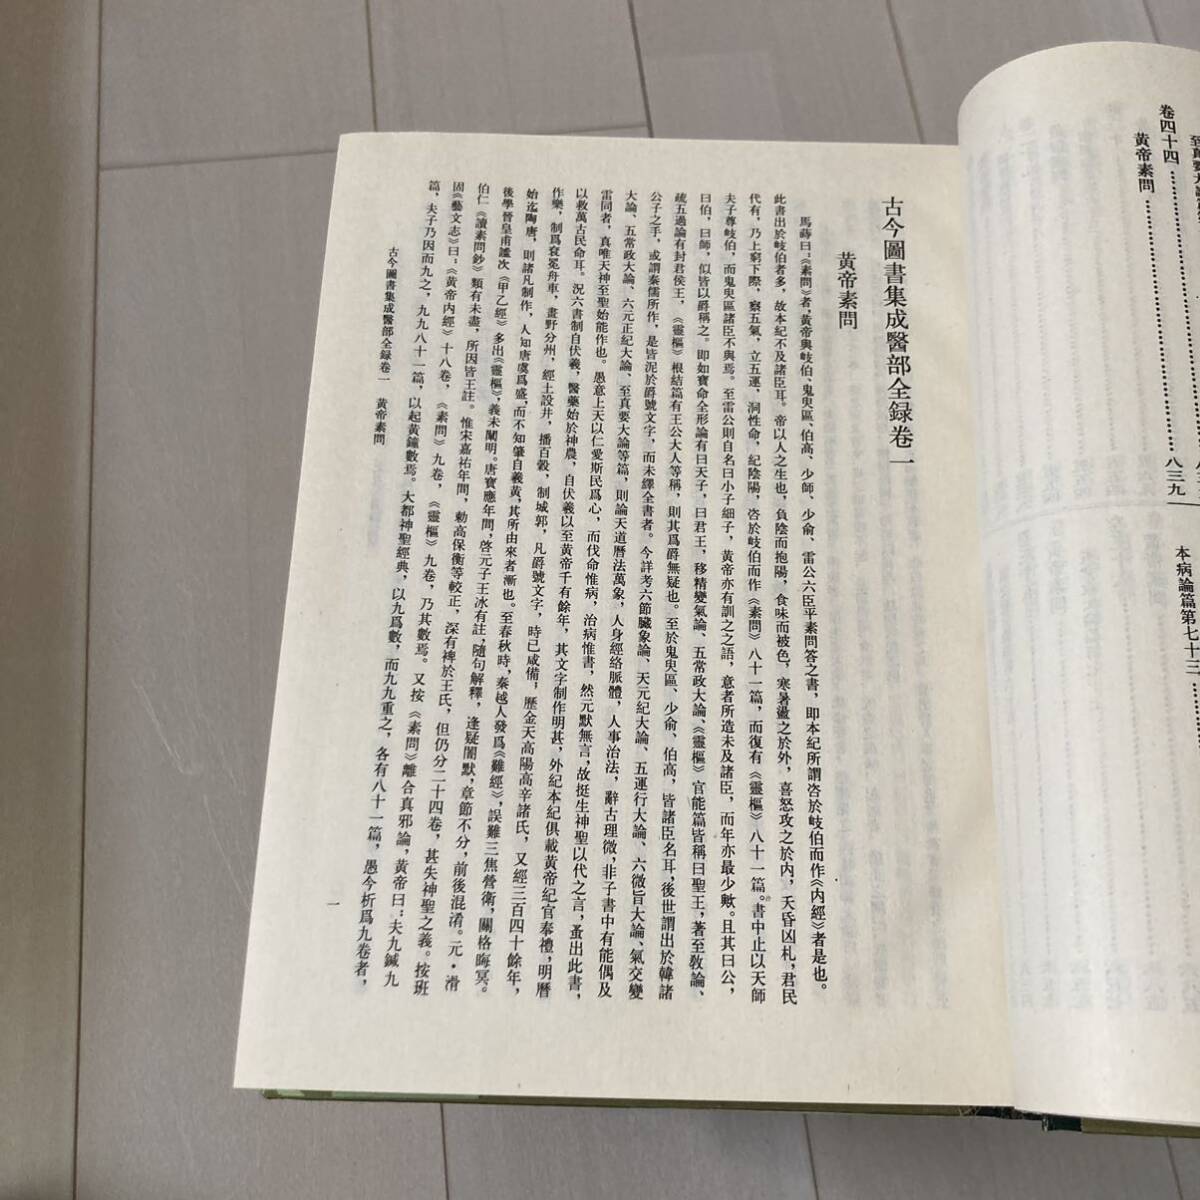 J 1991 год выпуск Tang книга@. печать книга@. оборудование книга@ China документ [ старый сейчас . документ сборник .. часть все запись ] все 12 шт. .